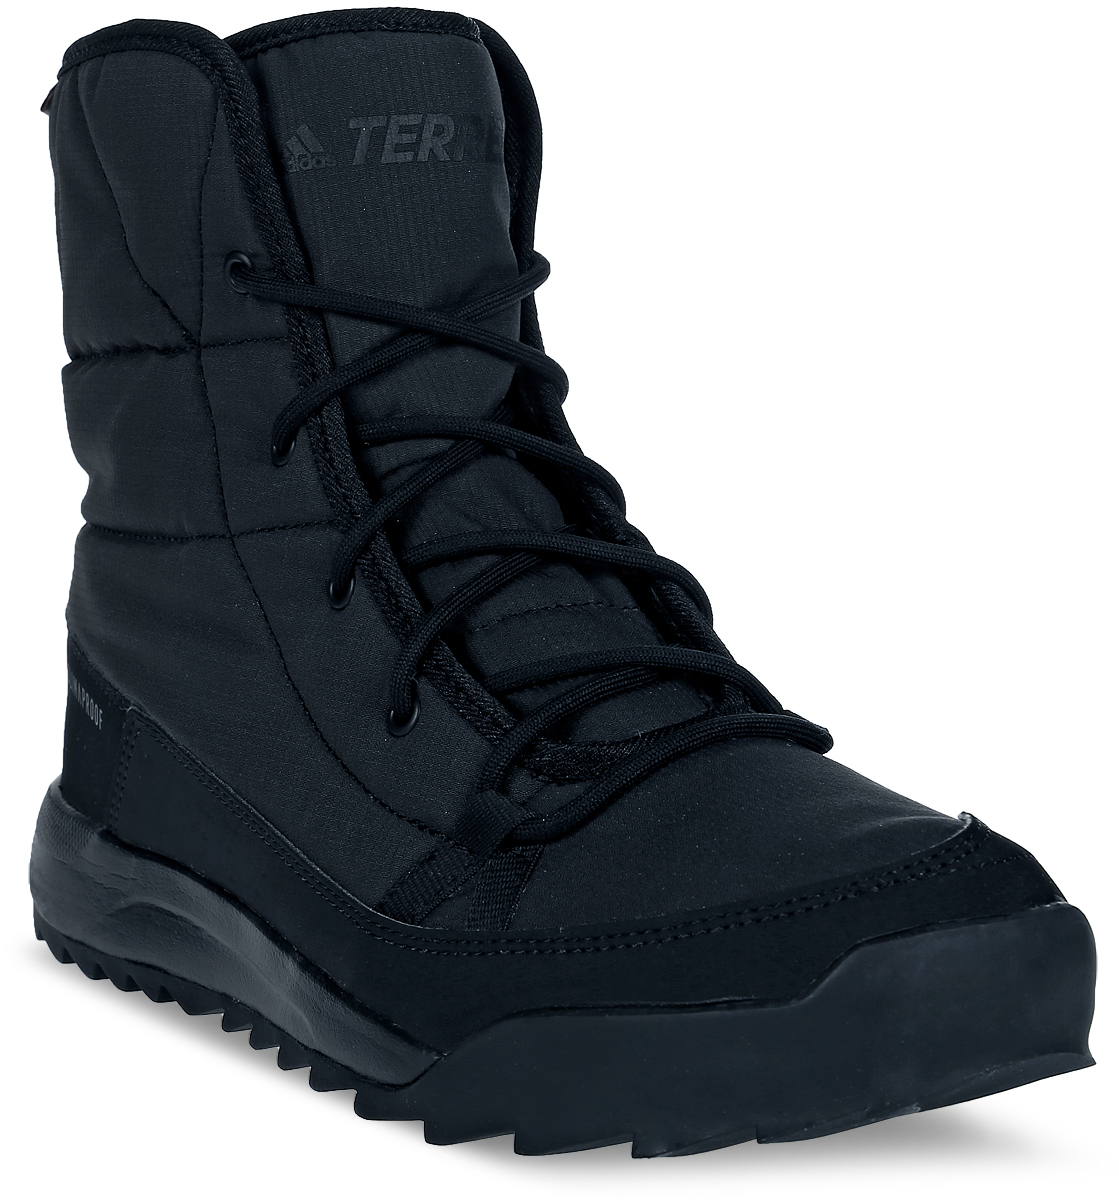 Ботинки женские Adidas Terrex Choleah Padd, цвет: черный. S80748. Размер 7,5 (40)